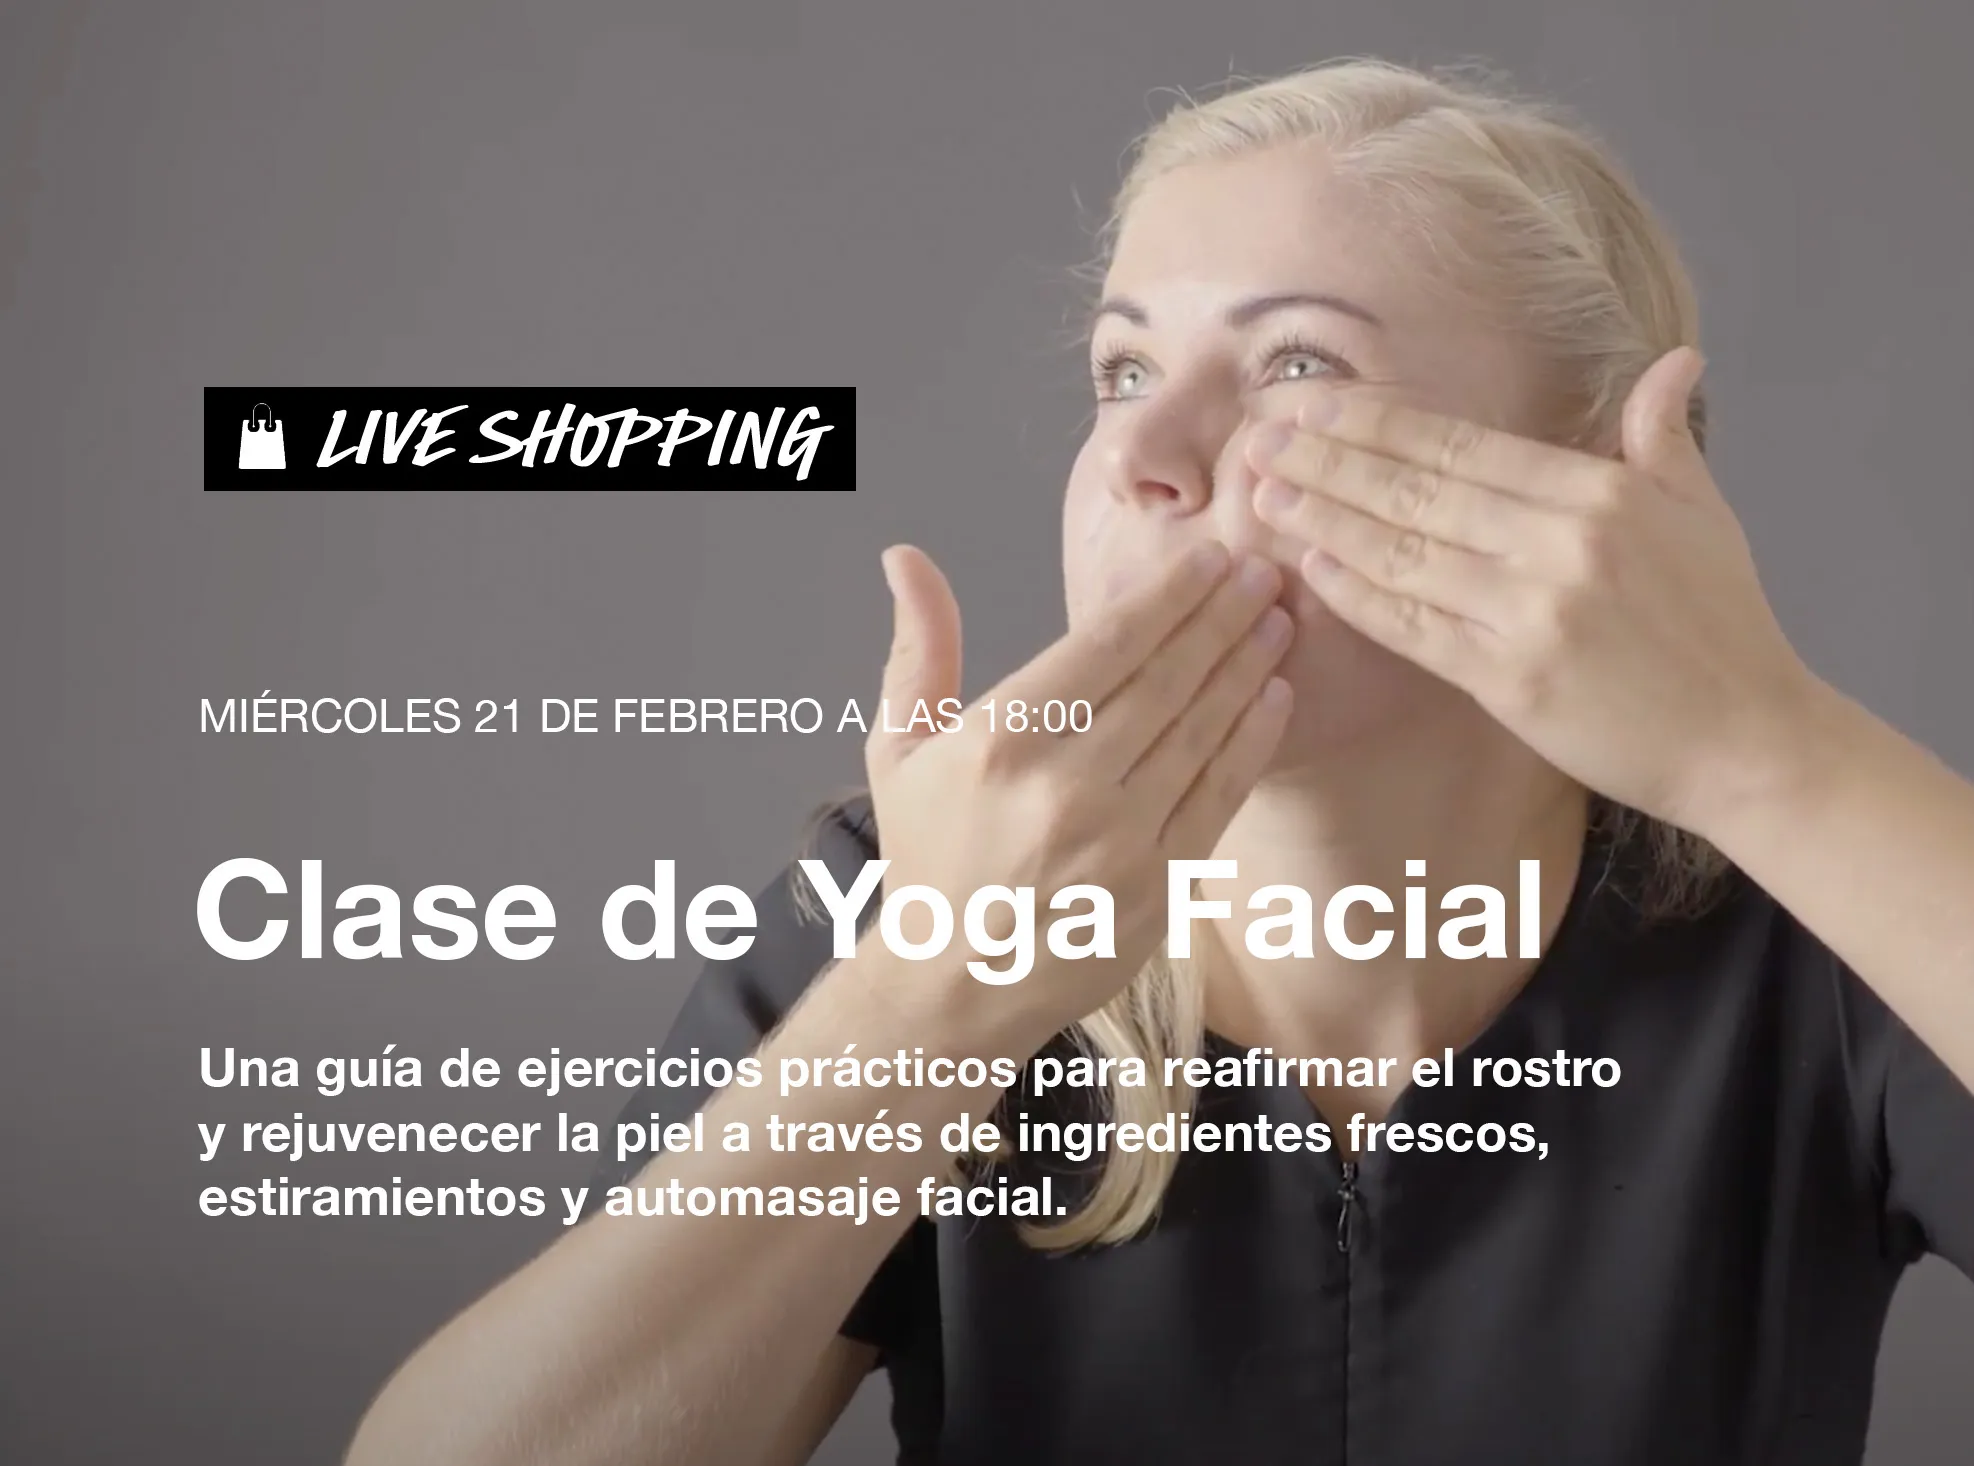 Clase de Yoga Facial shoppable video